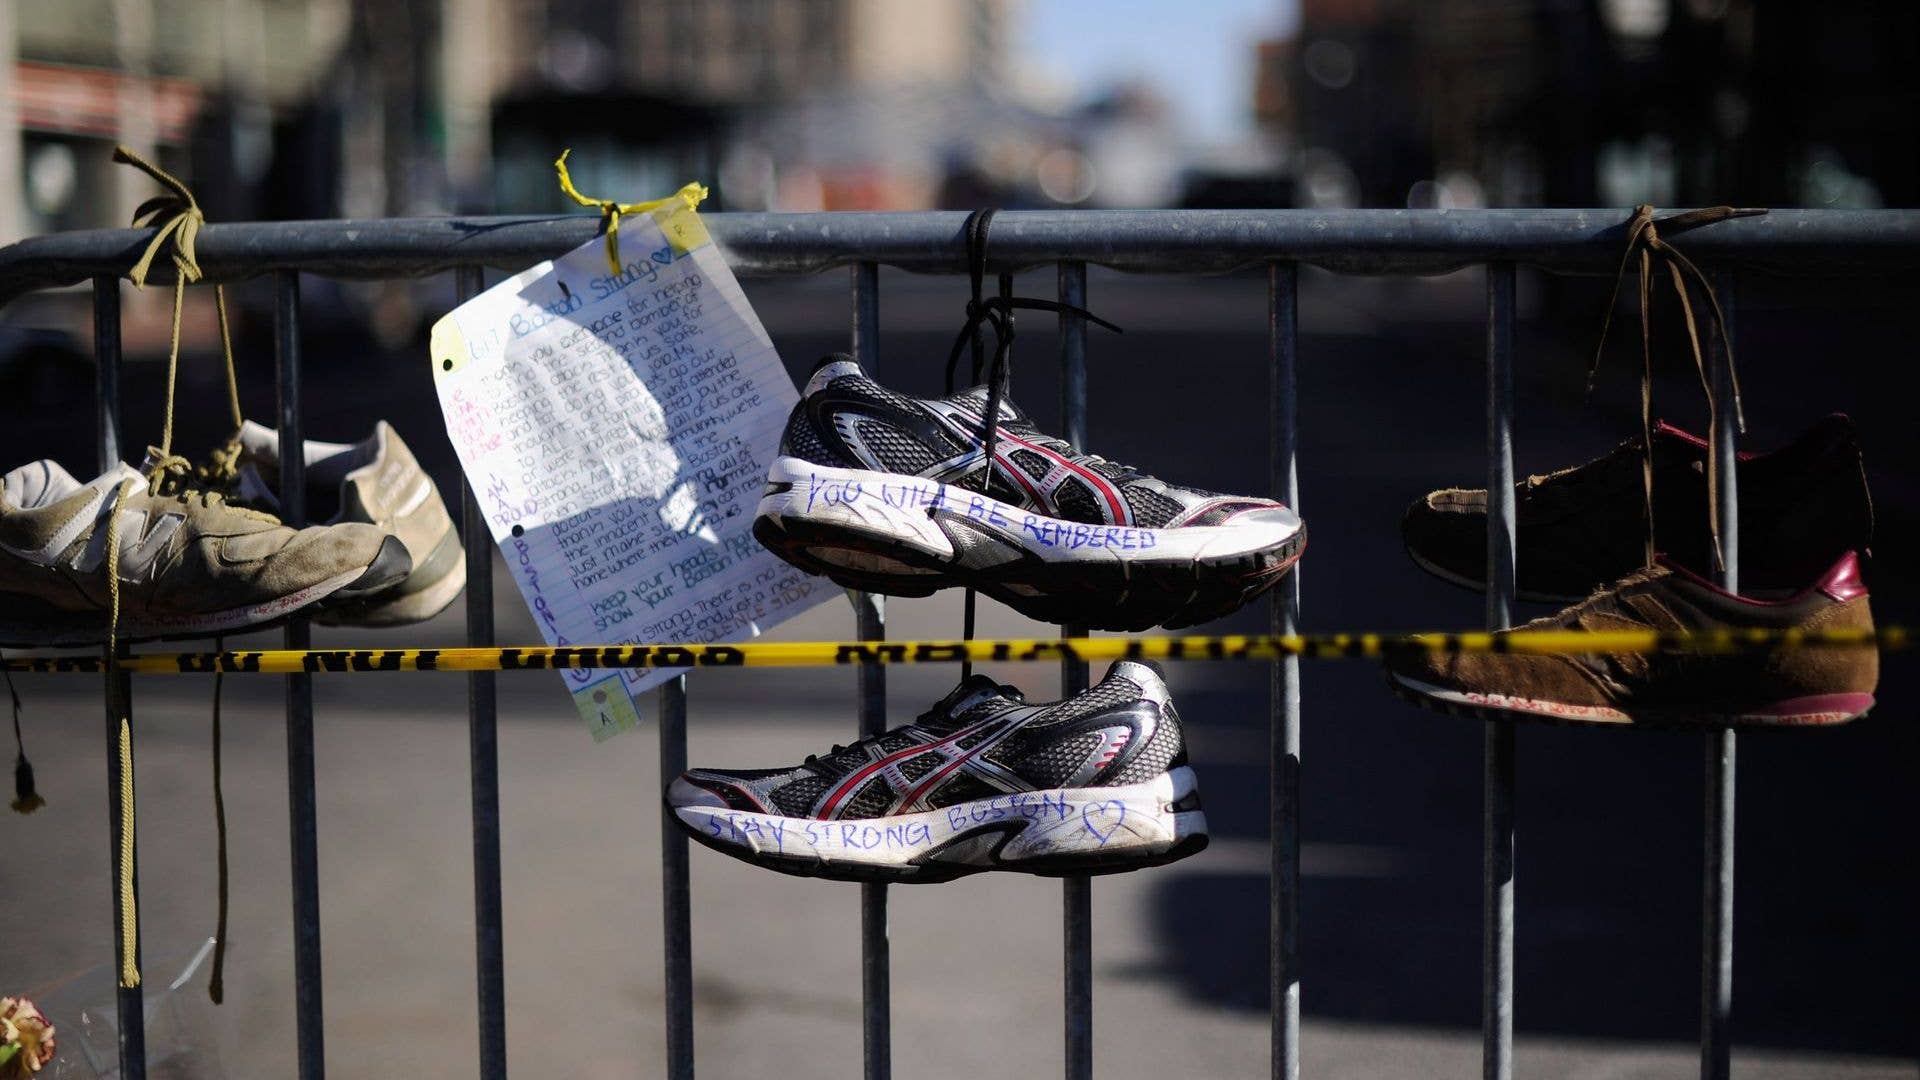 Shoes hang at a Boston Marathon display